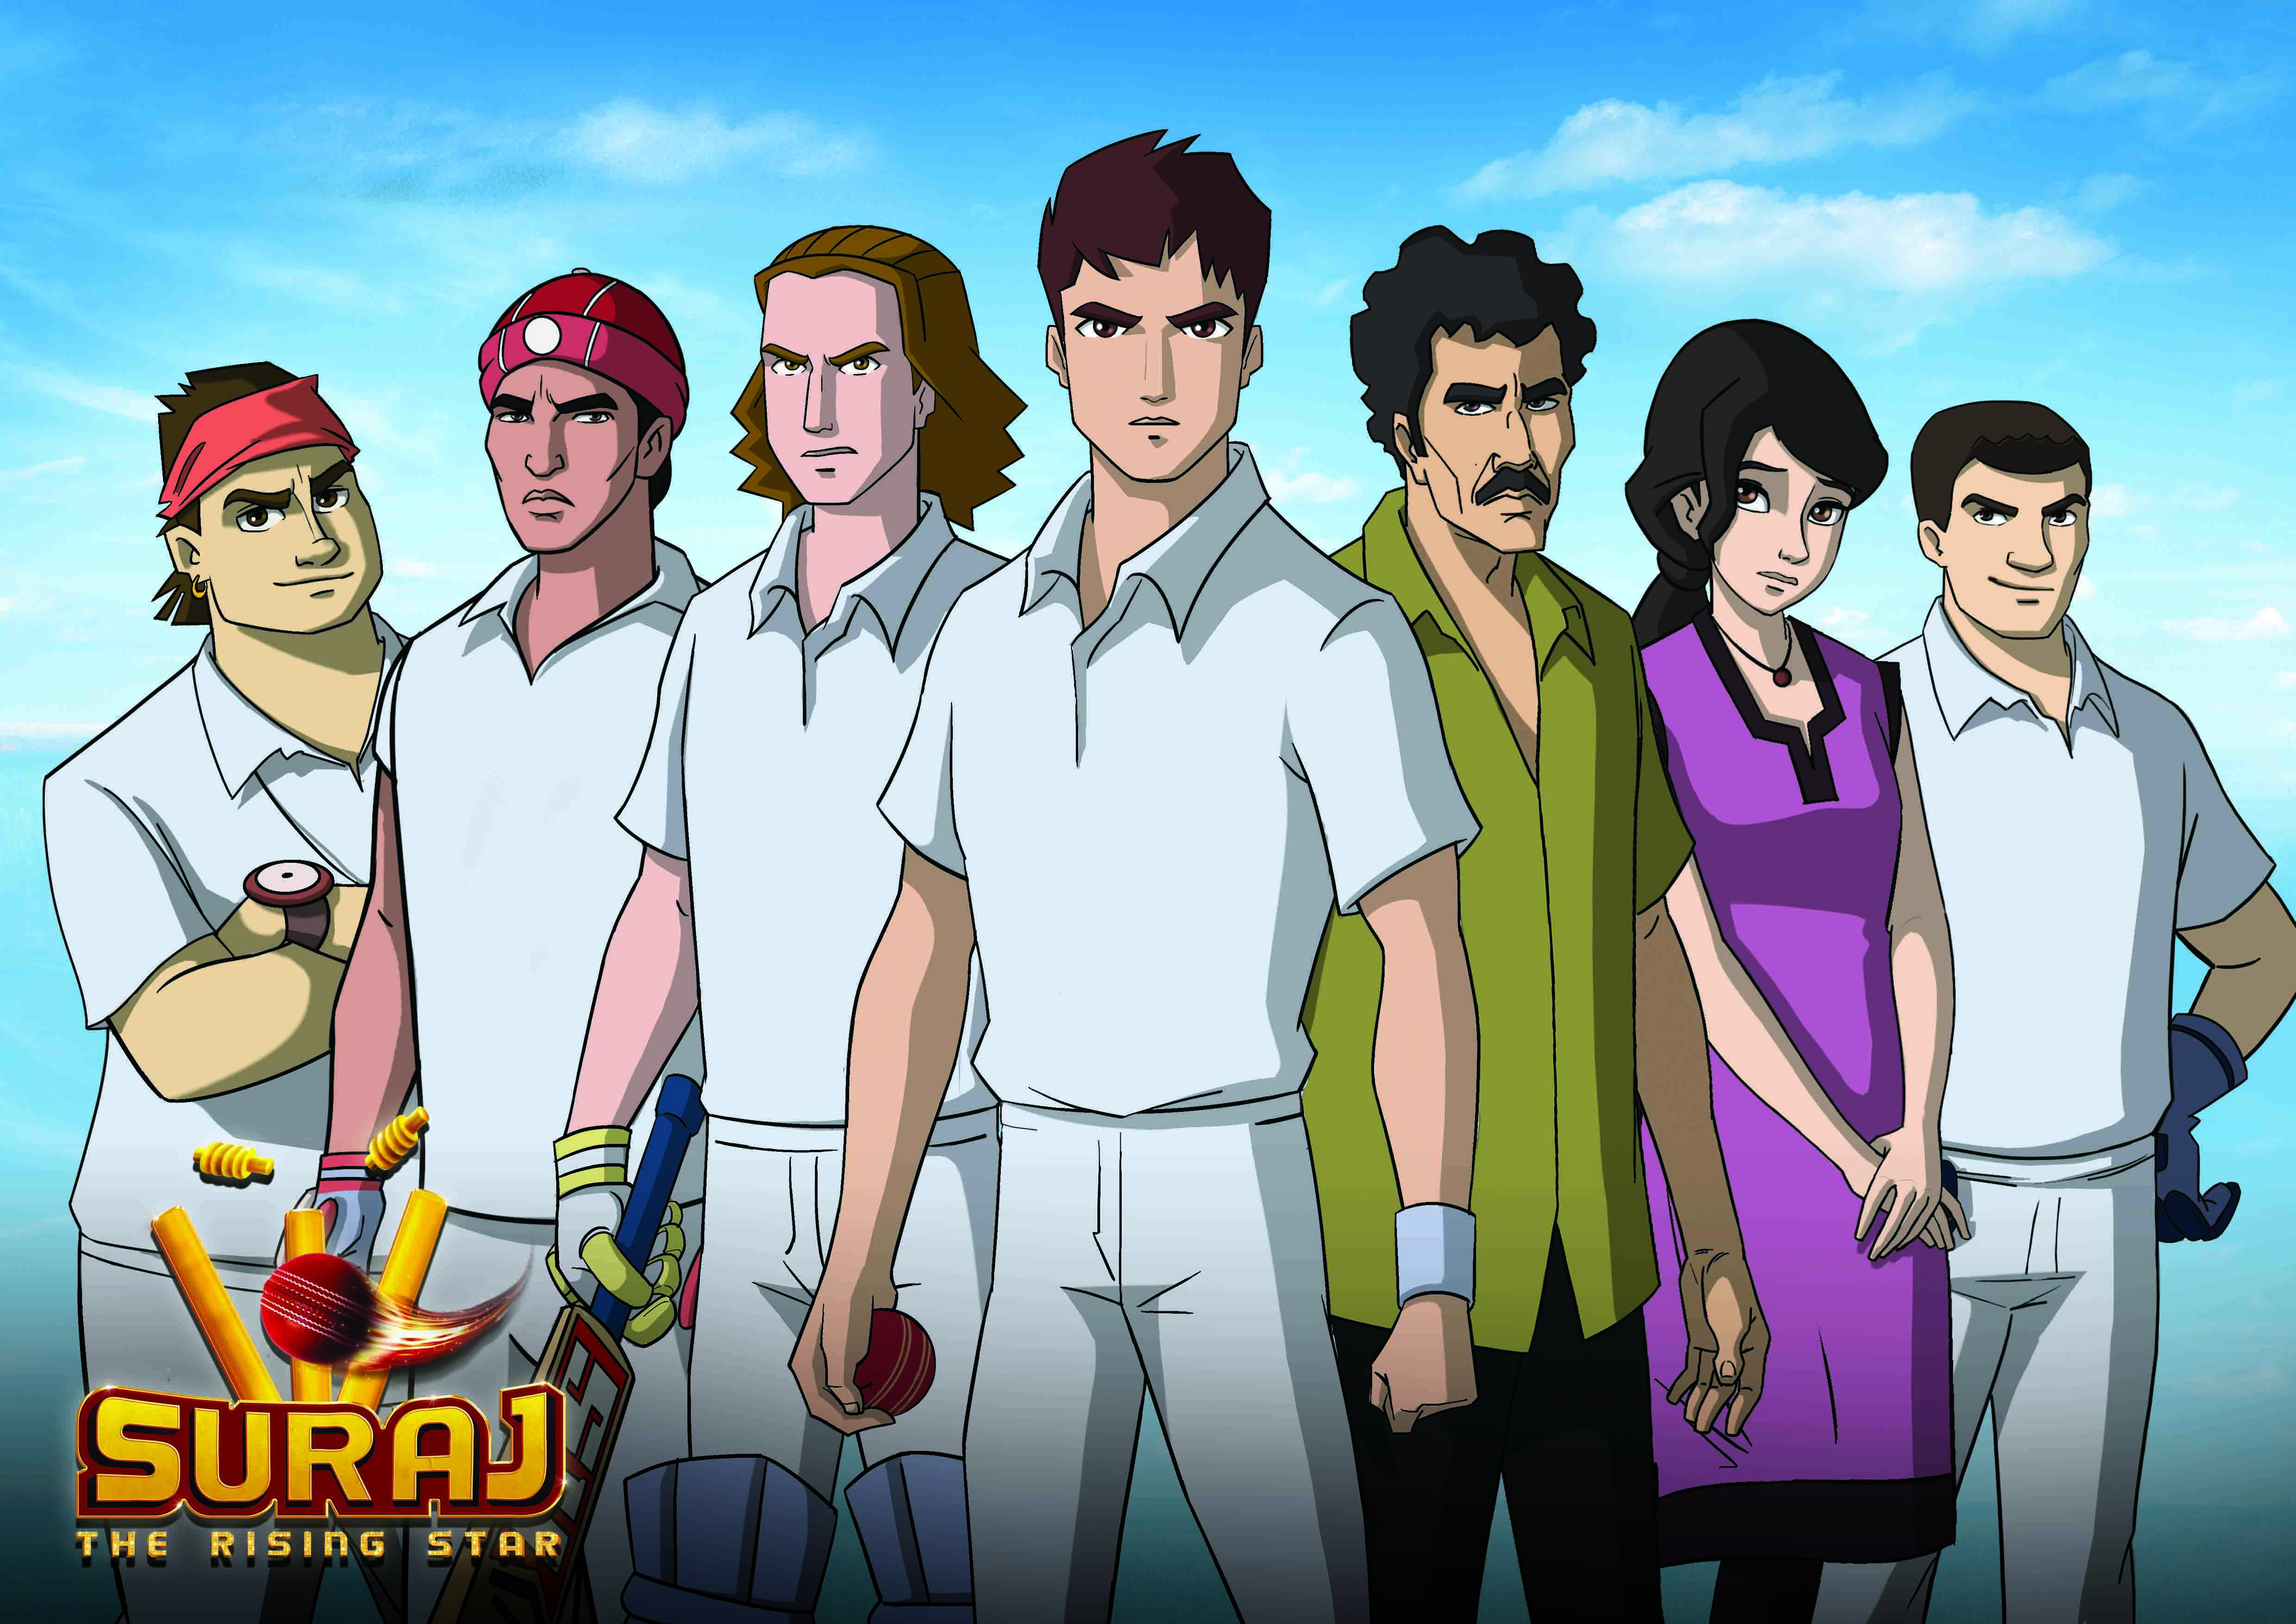 インド版アニメ「巨人の星」こと「スーラジ　ザ・ライジングスター」。中央が主人公のスーラジ、その左がライバルのヴィクラム